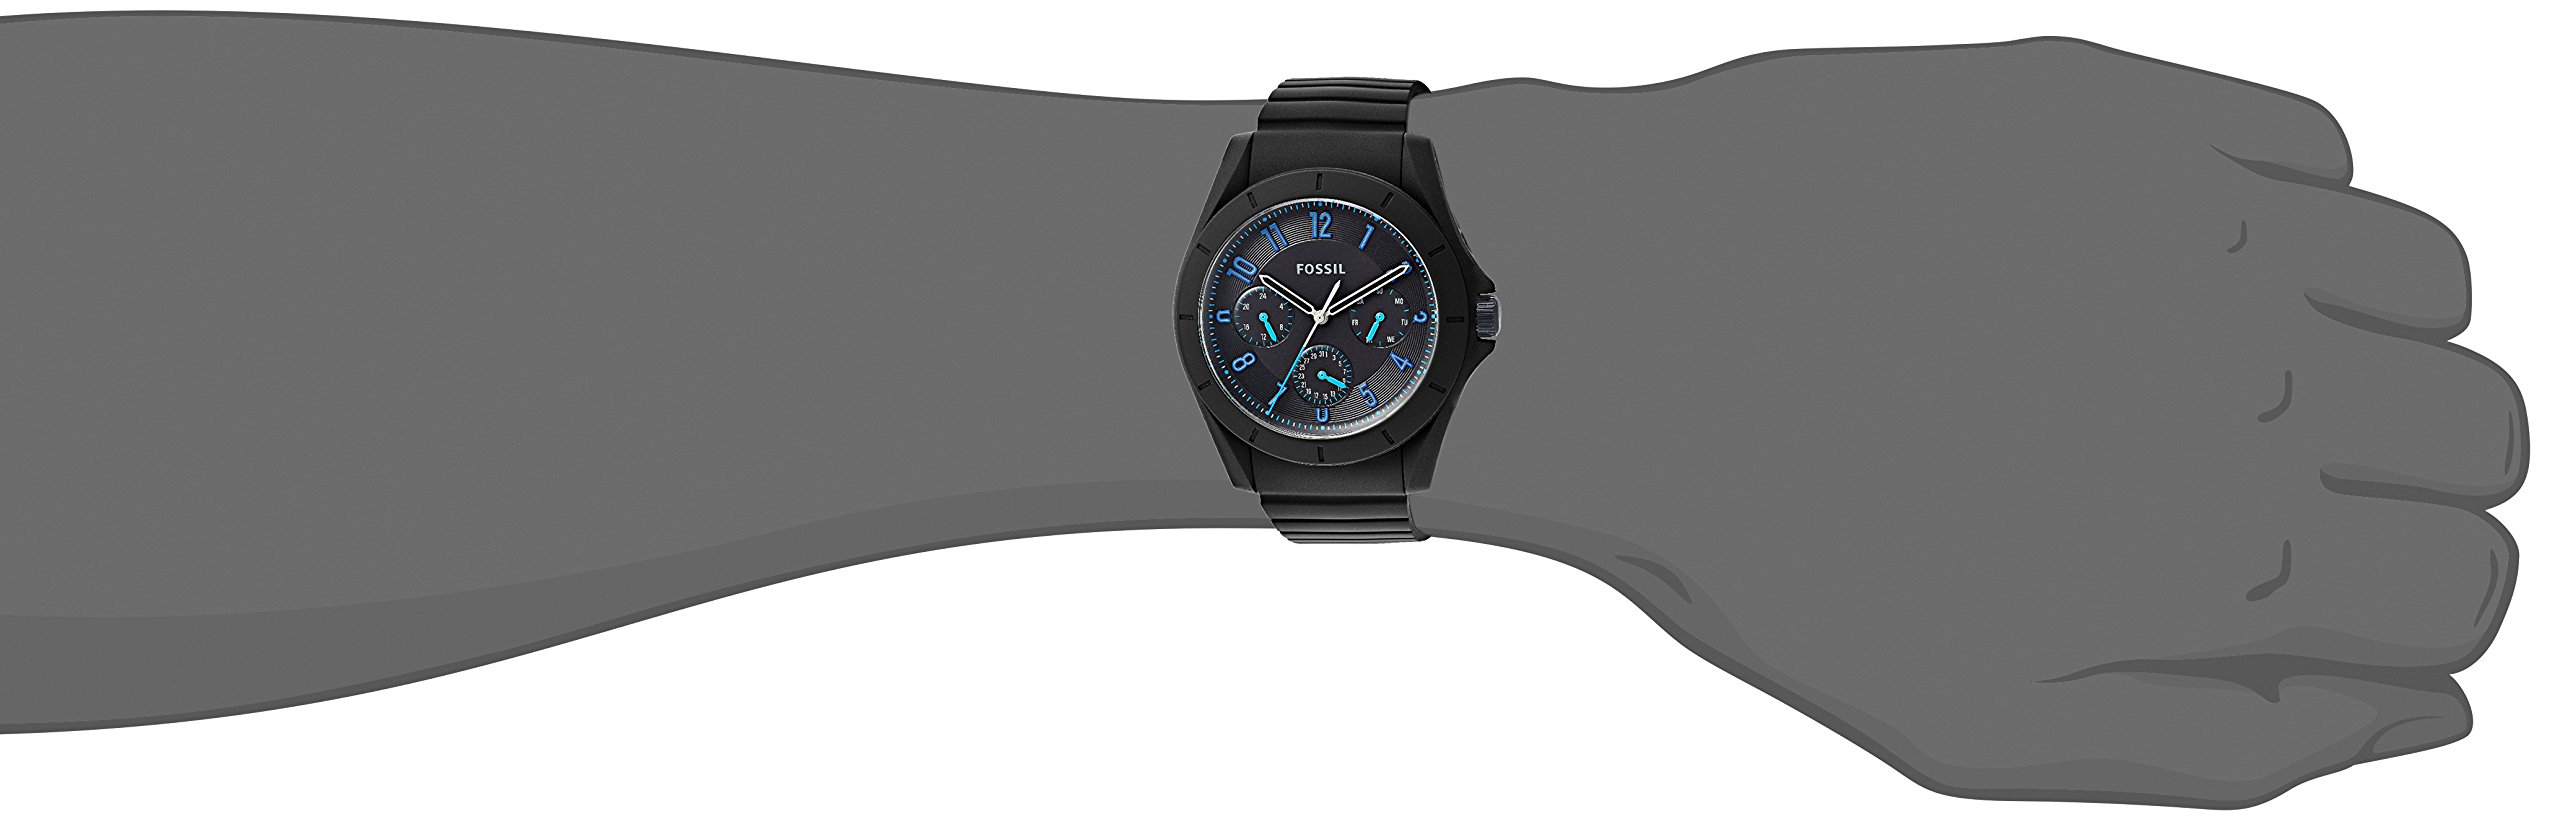 Fossil Men's Quartz Rubber and Silicone Casual Watch, Color:Black (Model: FS5222)